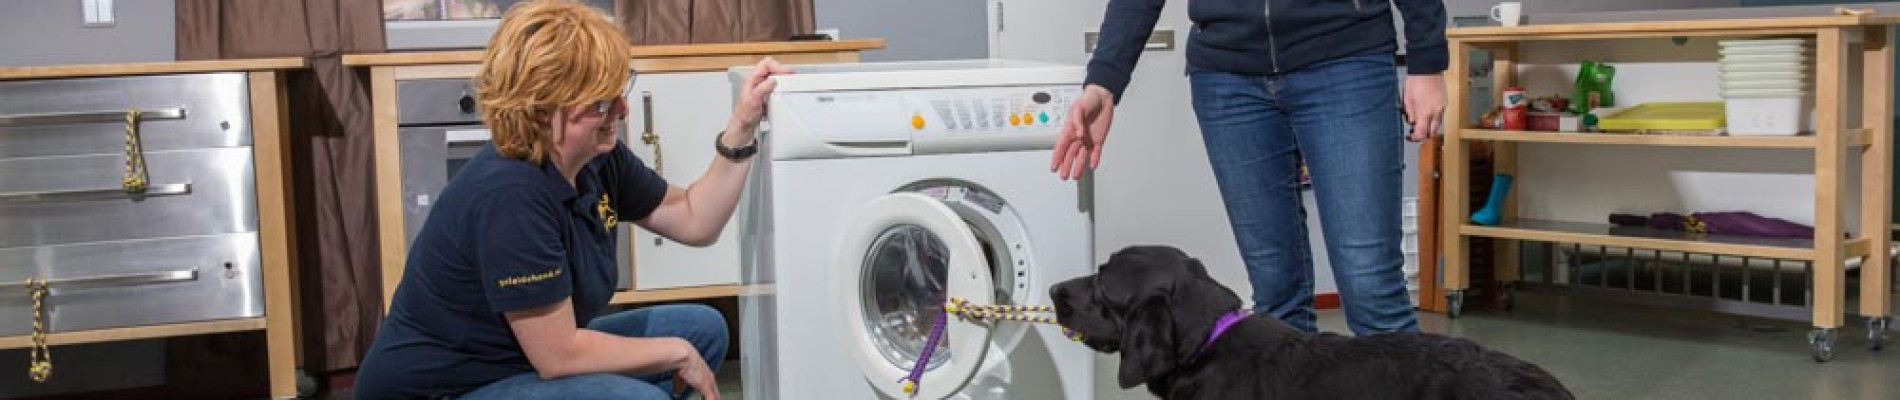 Marlouke en Tessa staan bij een wasmachine die door  een hond via een touwtje wordt opengetrokken